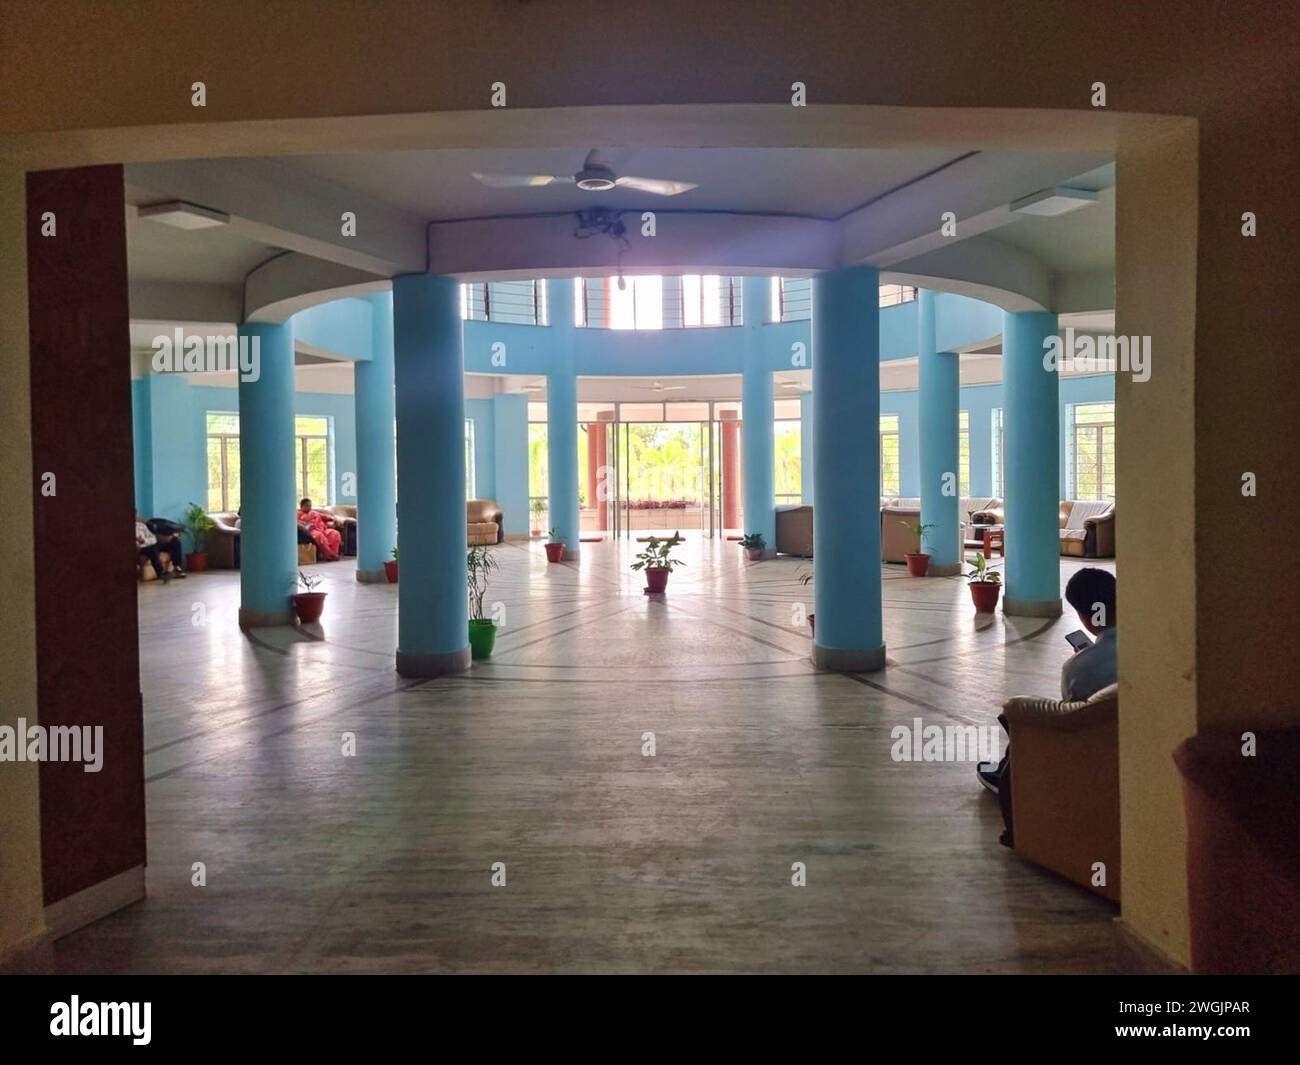 Das blaue Interieur des State Guest House, Agartala, begrüßt Gäste beim Eintritt. Es wurde im Einklang mit der lokalen Architektur entworfen und befindet sich mitten in der Stadt auf einem Hügel mit einem dramatischen Blick auf die Stadt. Agartala ist die Hauptstadt von Tripura, einem Bundesstaat im Nordosten Indiens. Stockfoto